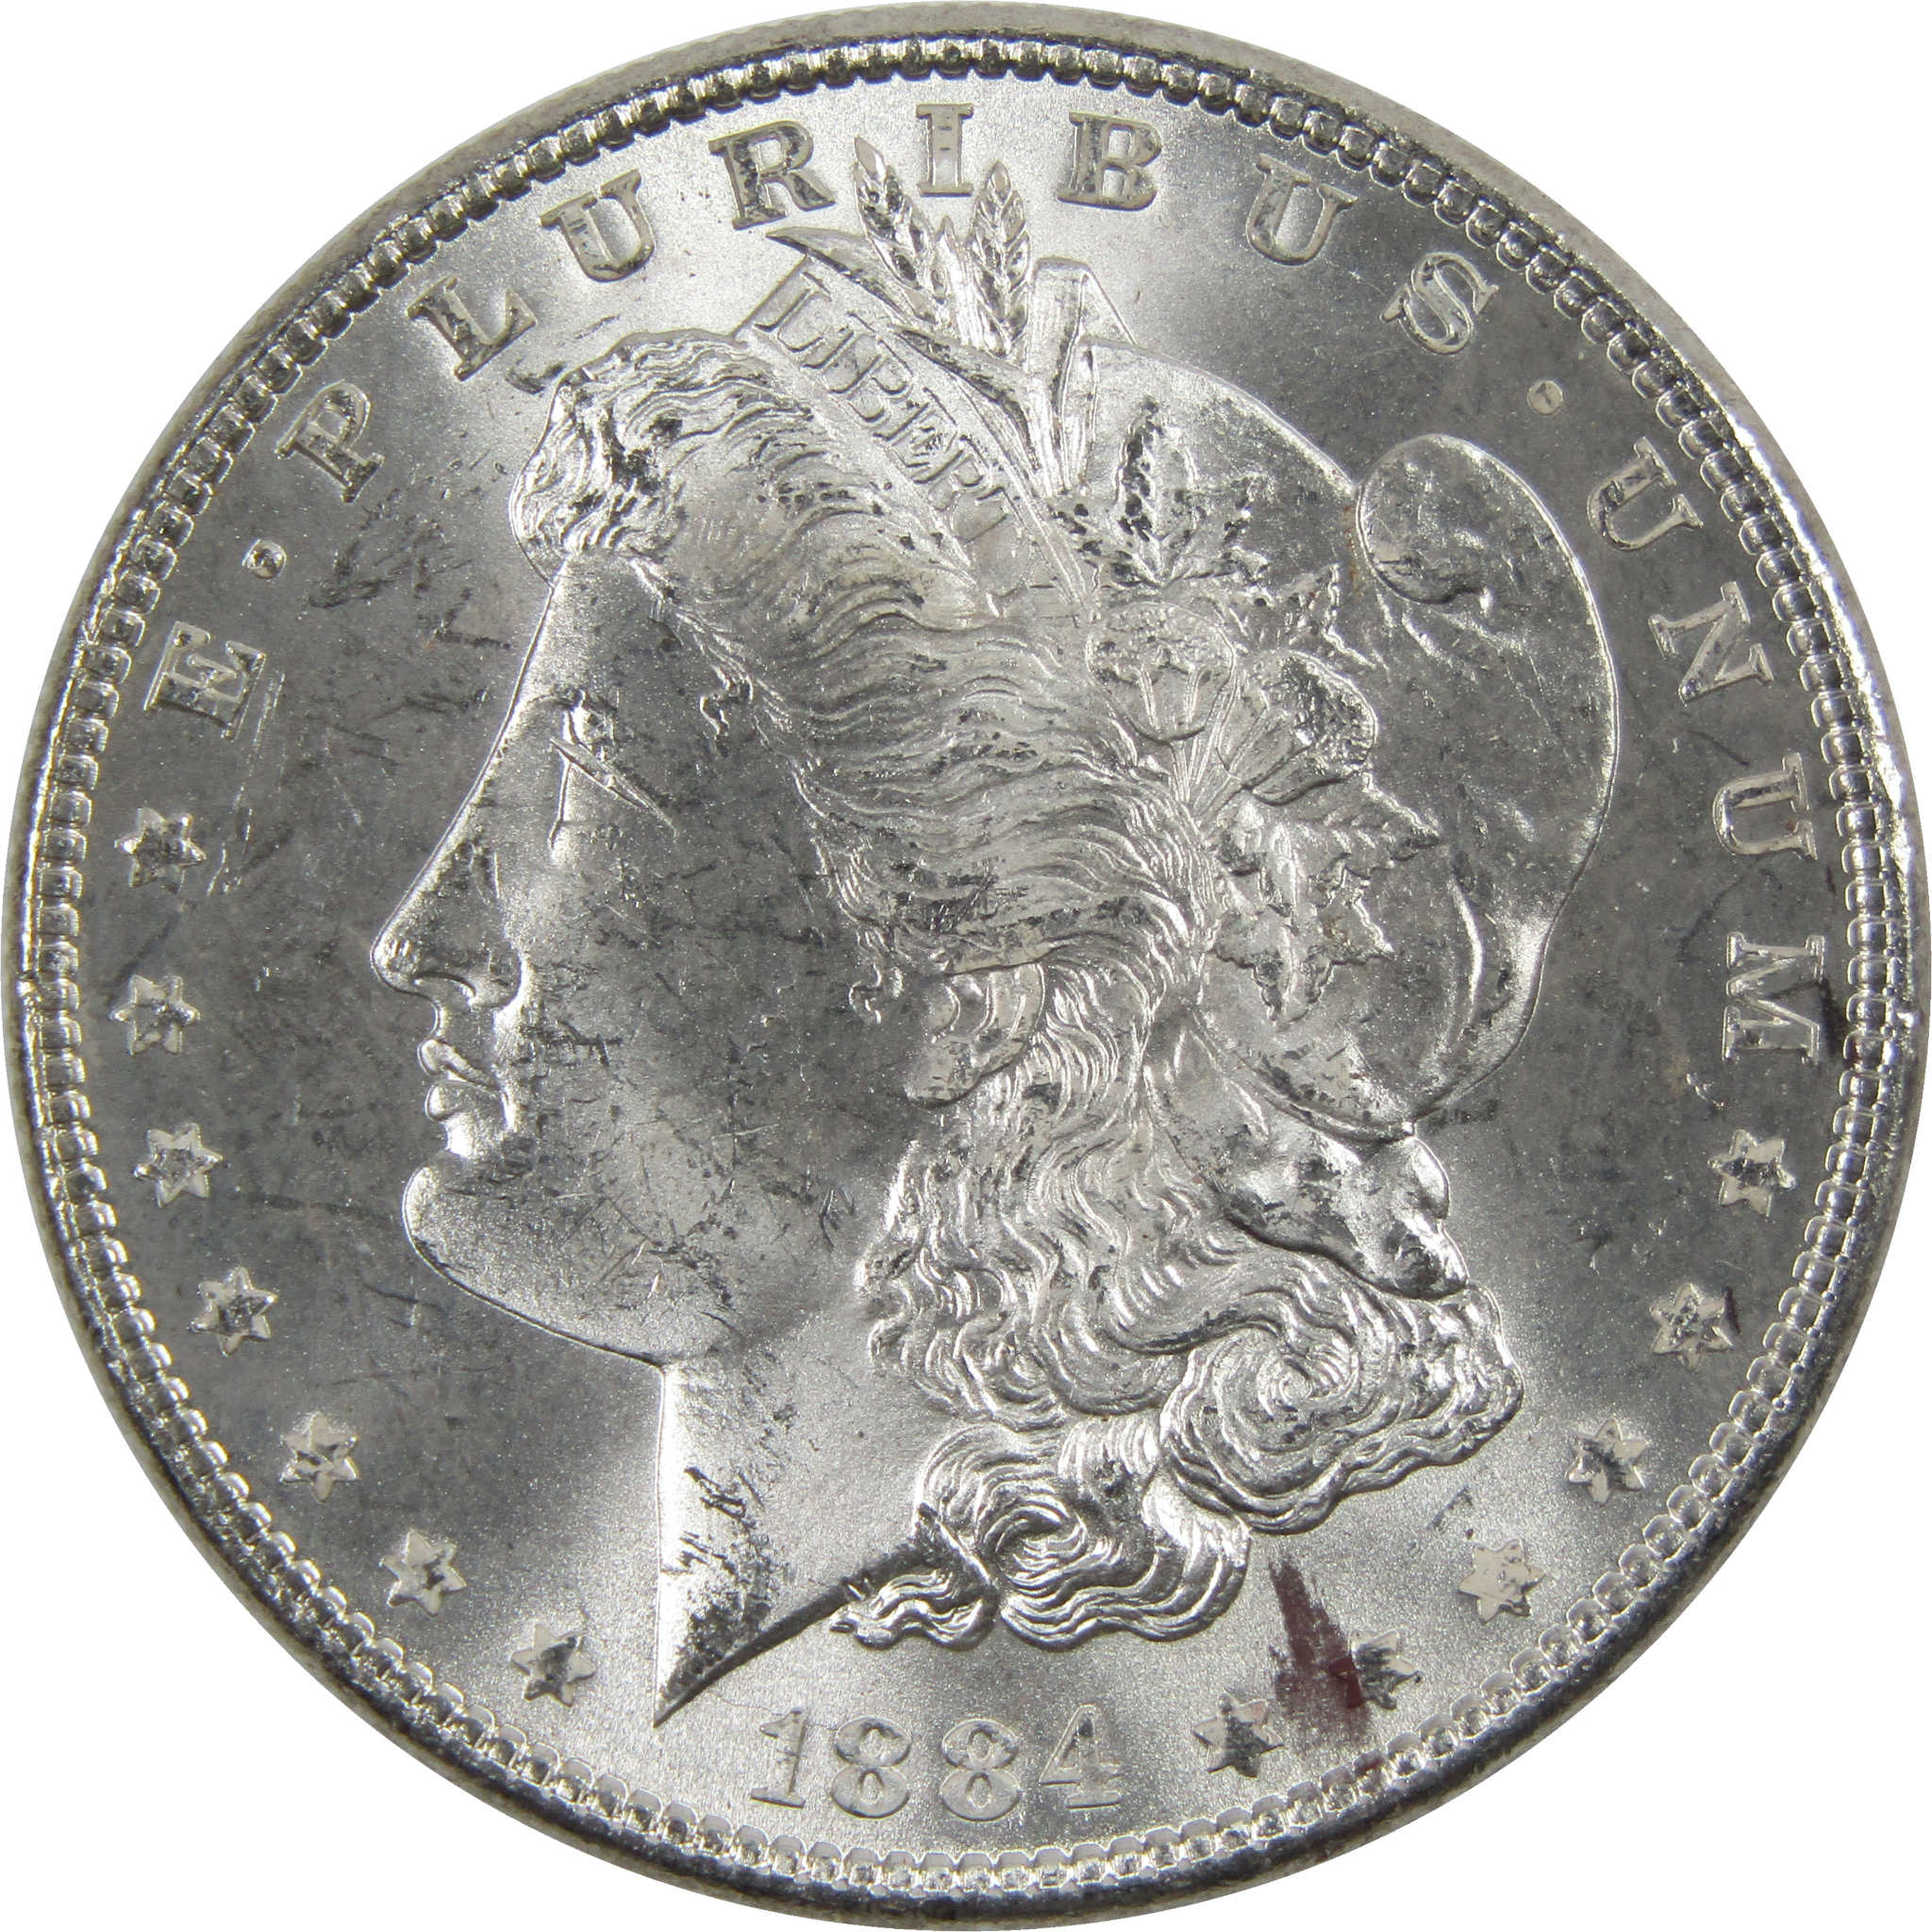 1884 Morgan Dollar BU Uncirculated 90% Silver $1 Coin SKU:I6024 - Morgan coin - Morgan silver dollar - Morgan silver dollar for sale - Profile Coins &amp; Collectibles